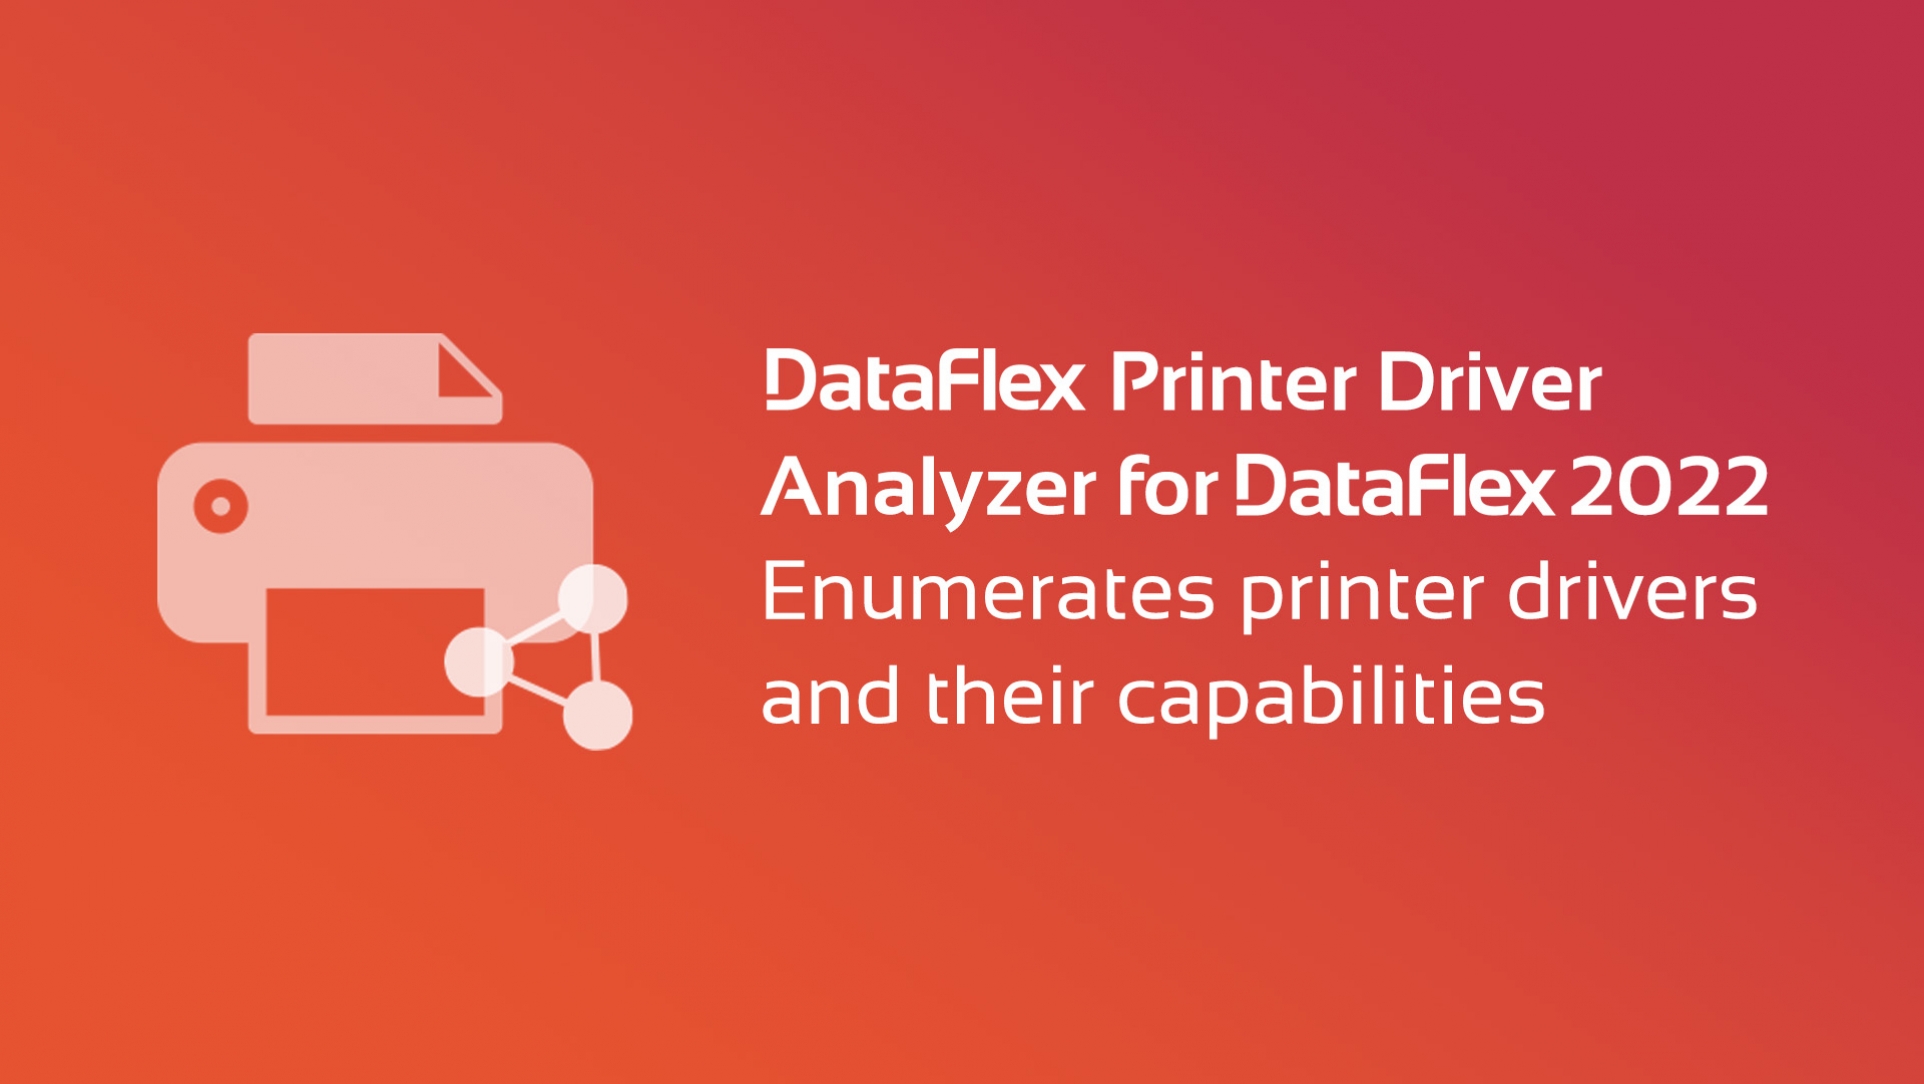 DataFlex Printer Driver Analyzer